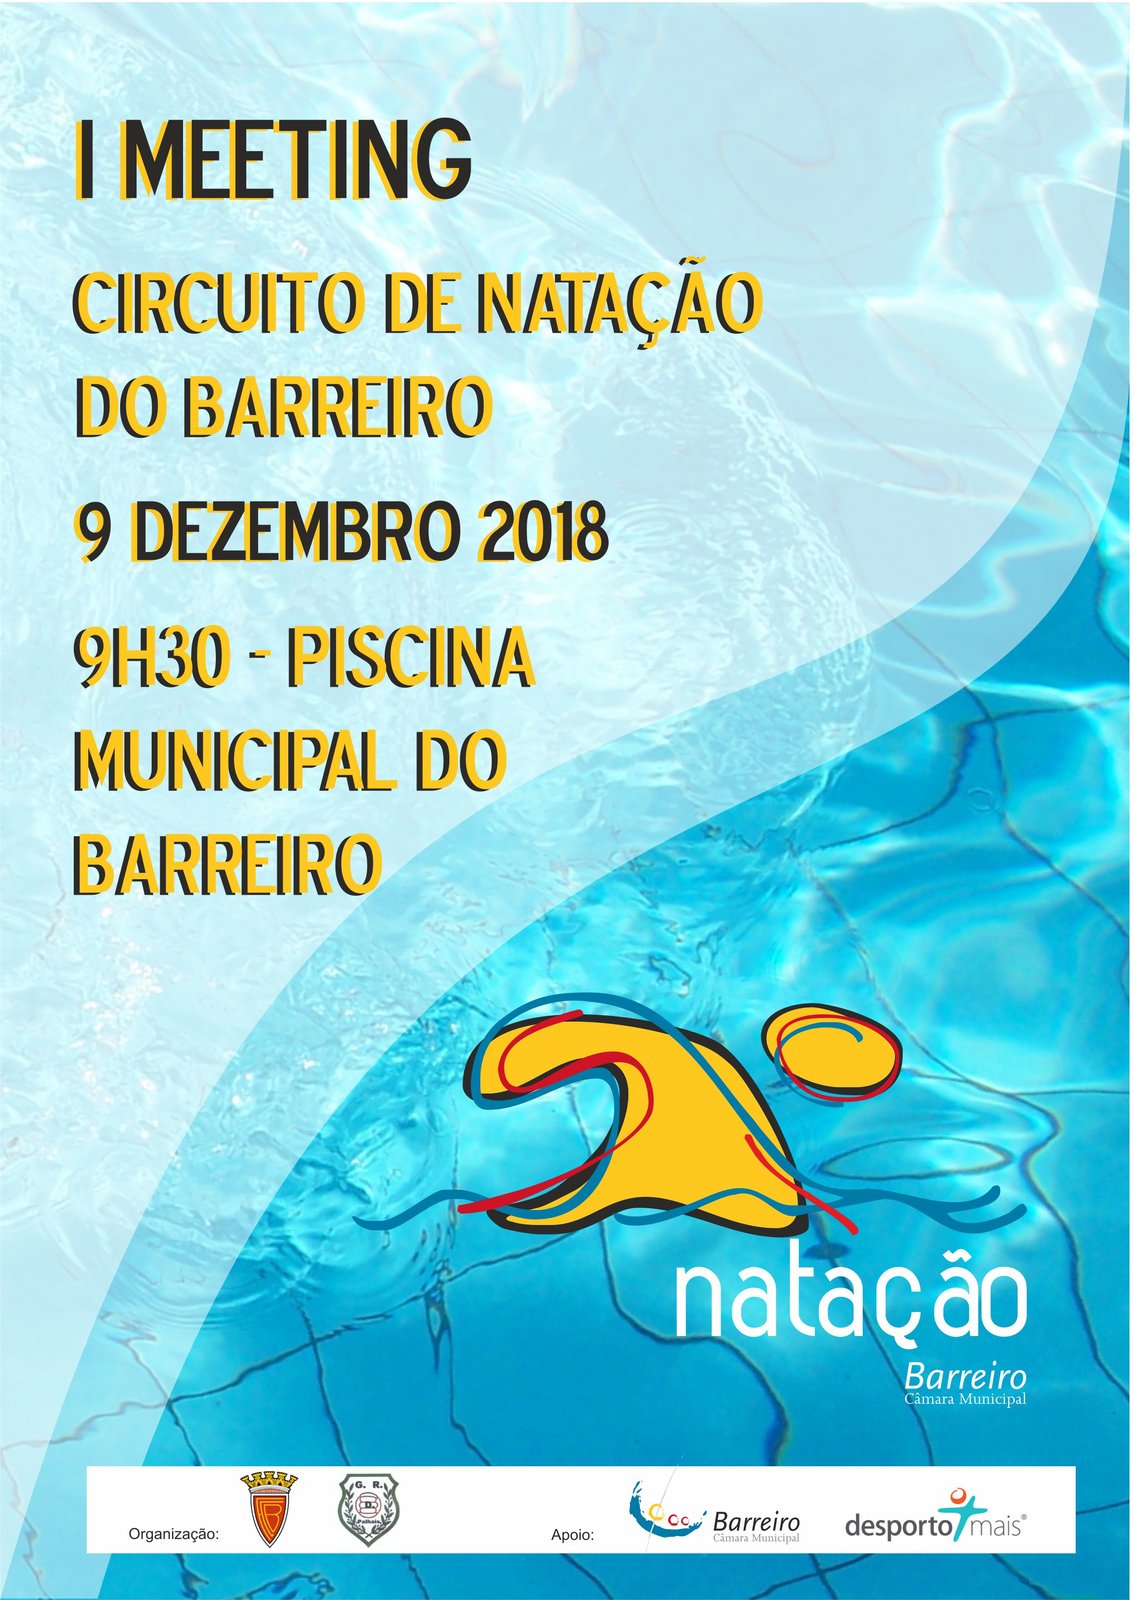 Circuito de Natação do Barreiro 2018/19 | 1º Meeting